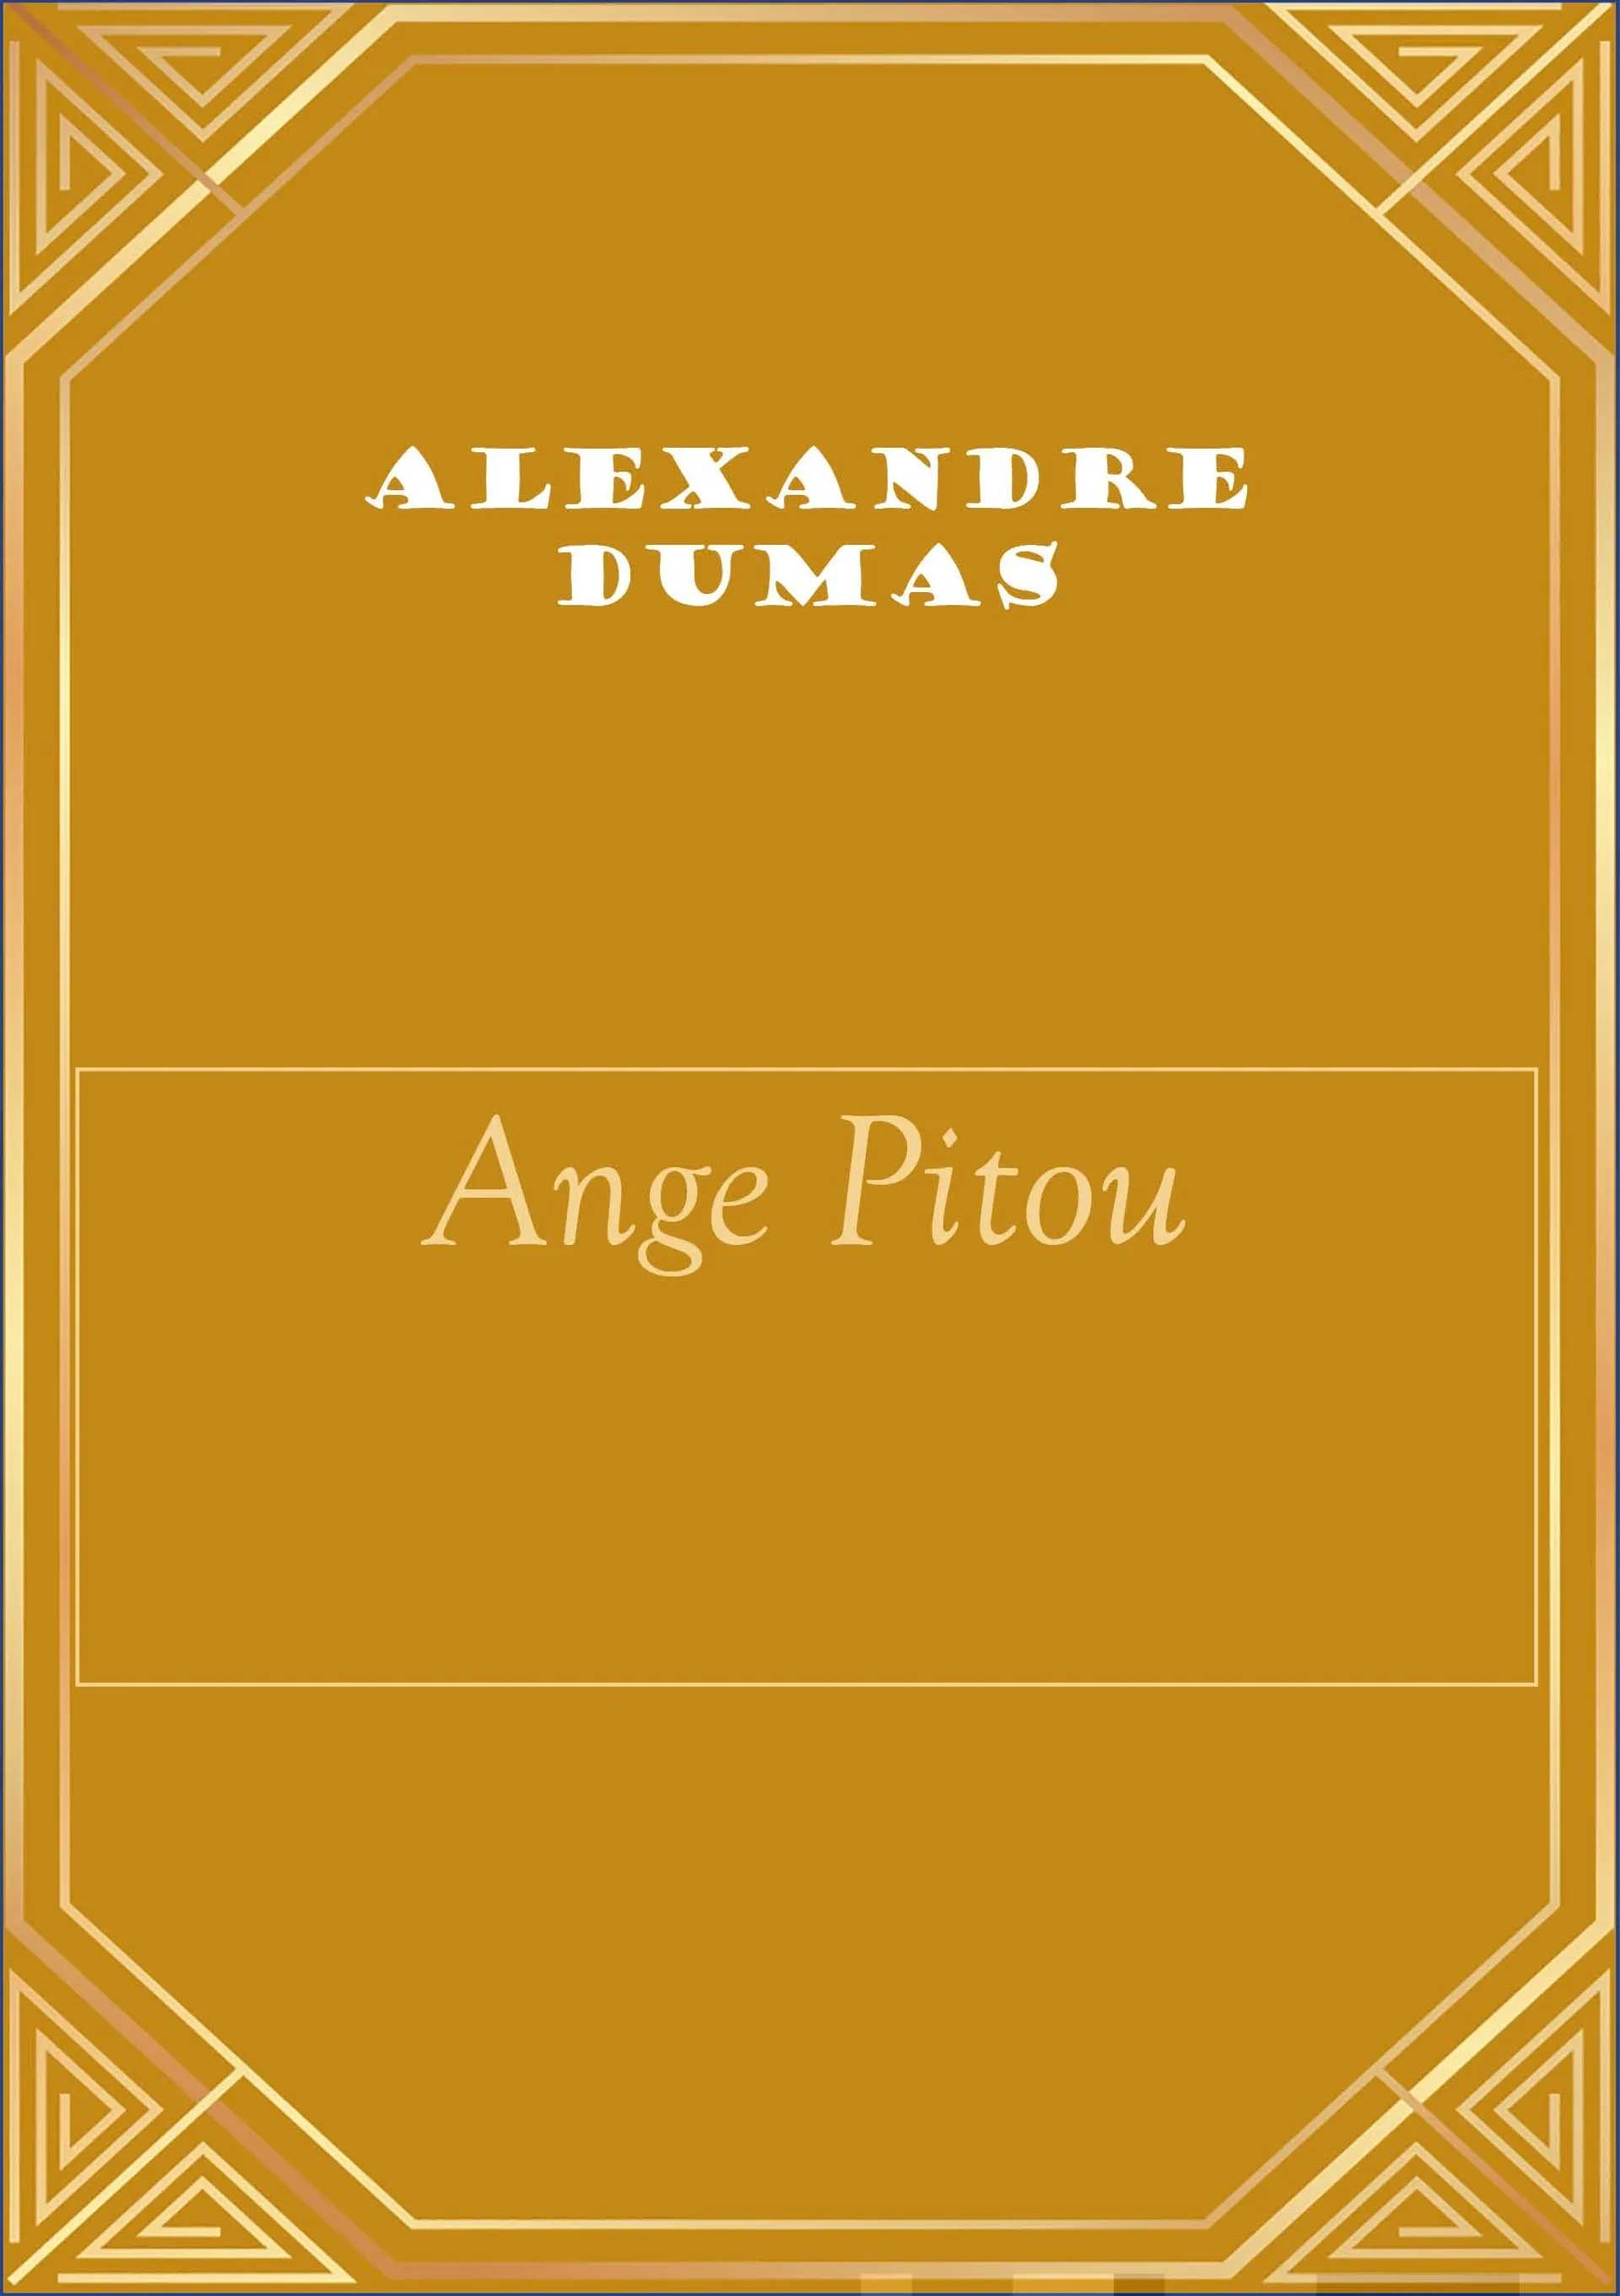 Dumas, Ange Pitou